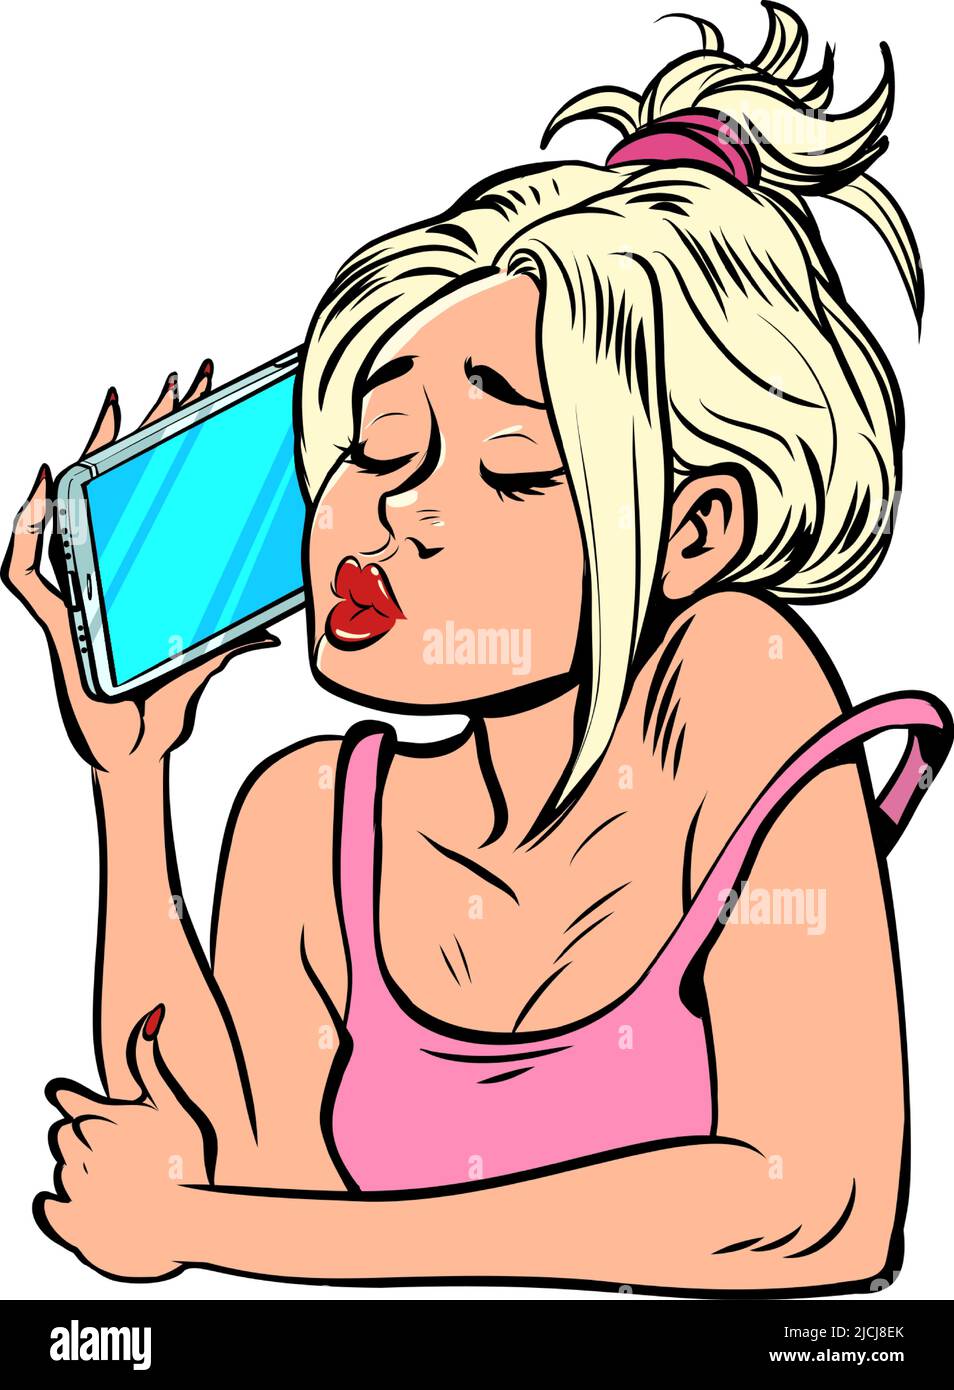 Una mujer joven habla por teléfono. Smartphone en la mano. Aparatos modernos, comunicación móvil, internet Ilustración del Vector